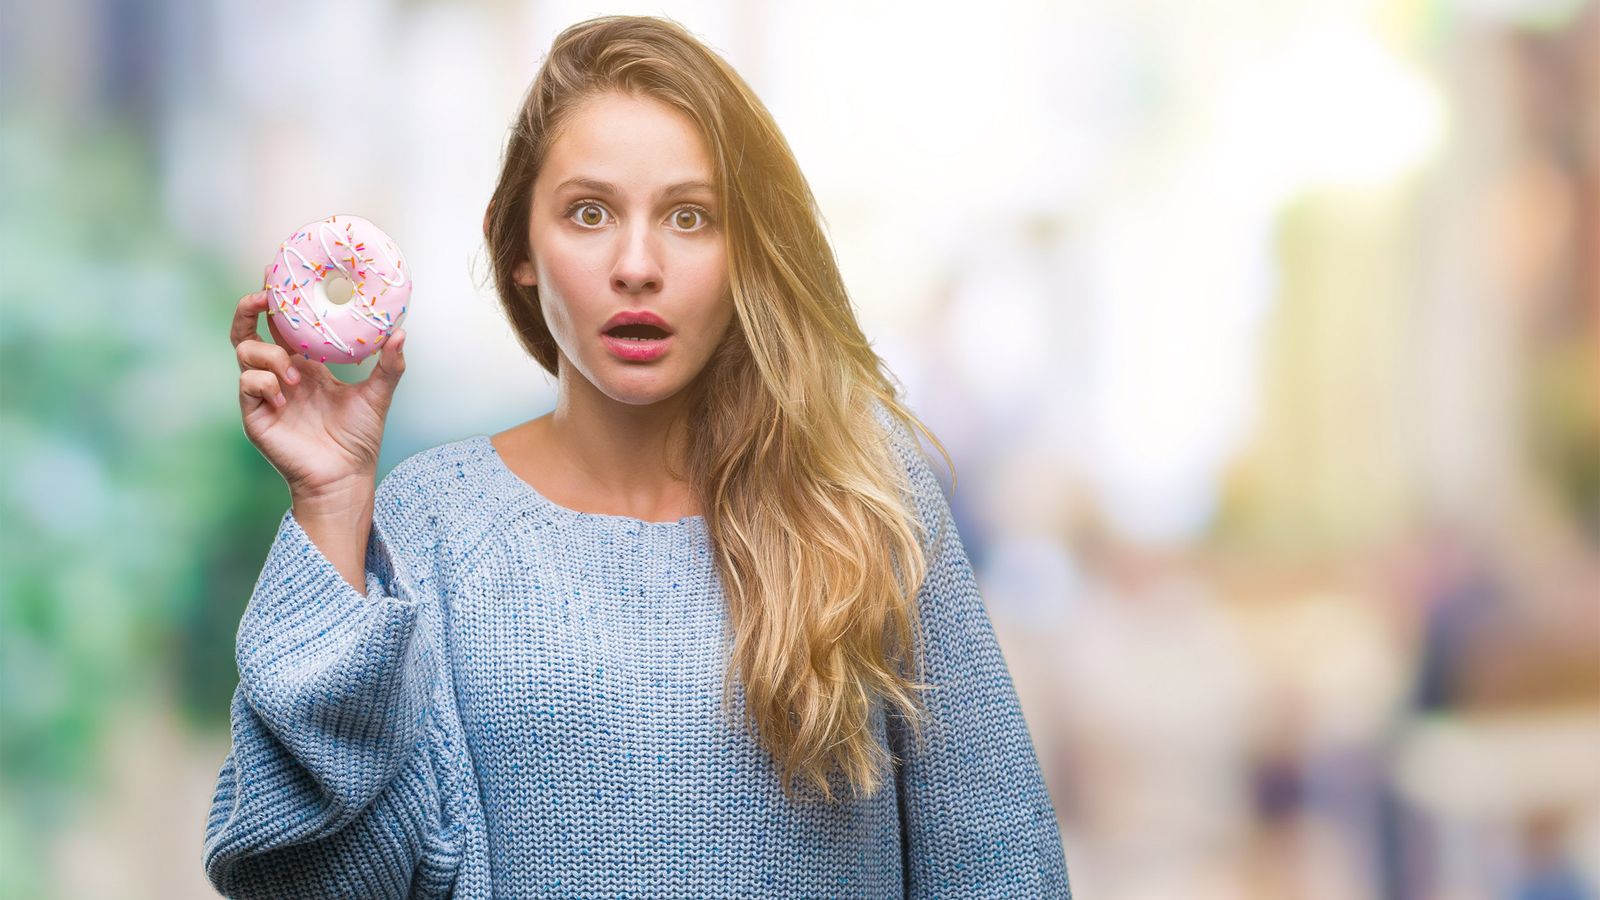 Frau hat einen Donut in der Hand und ist geschockt, dass Zucker Herzkrankheiten fördert